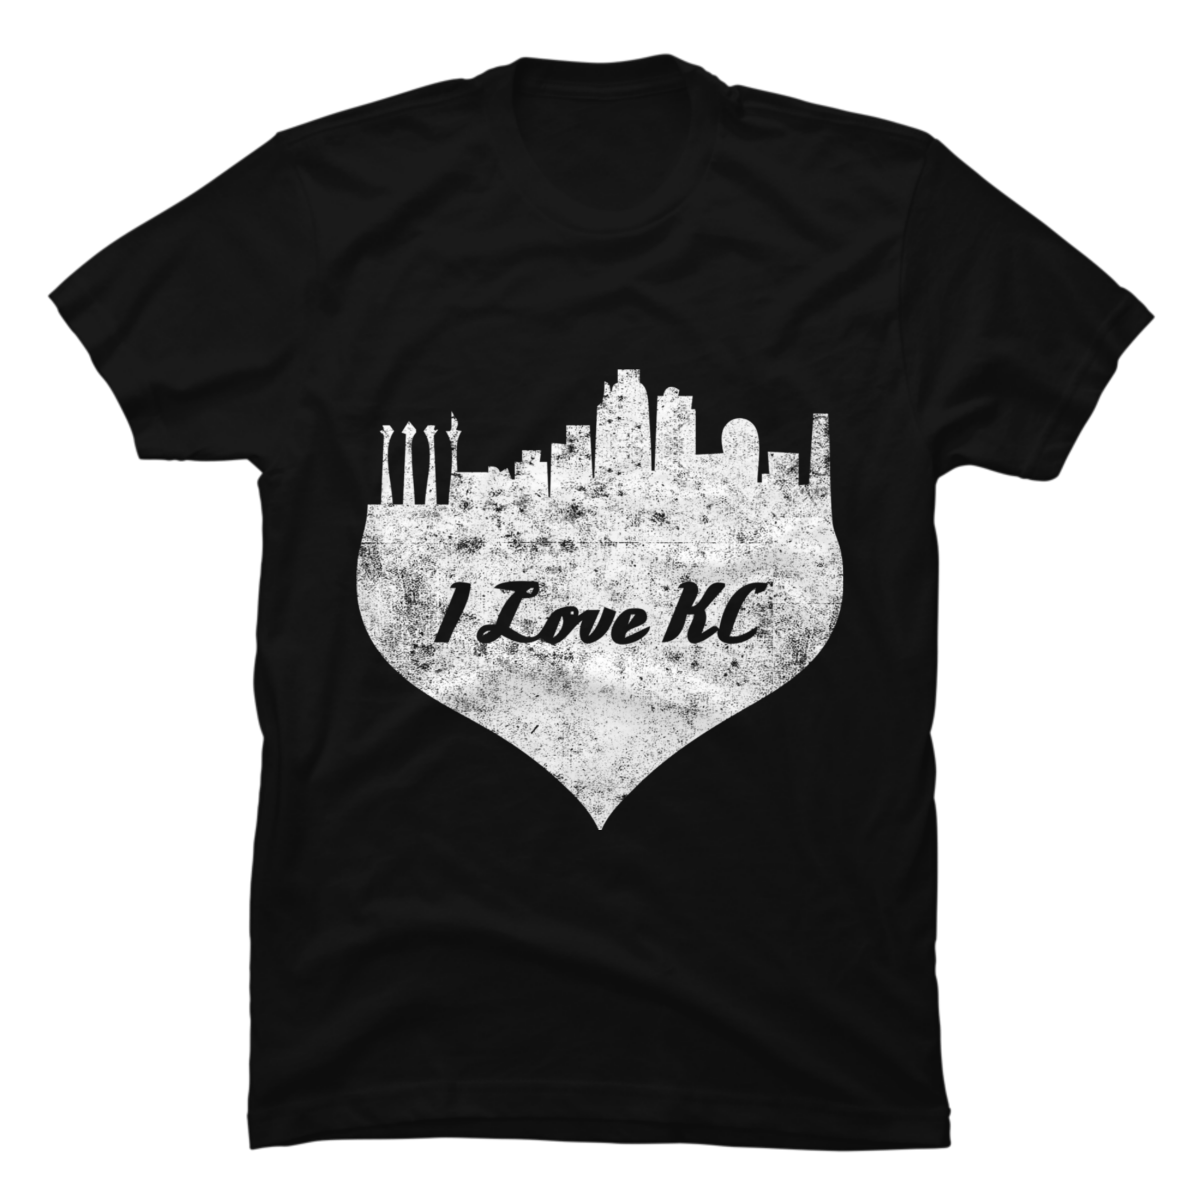 kc heart shirt where to buy